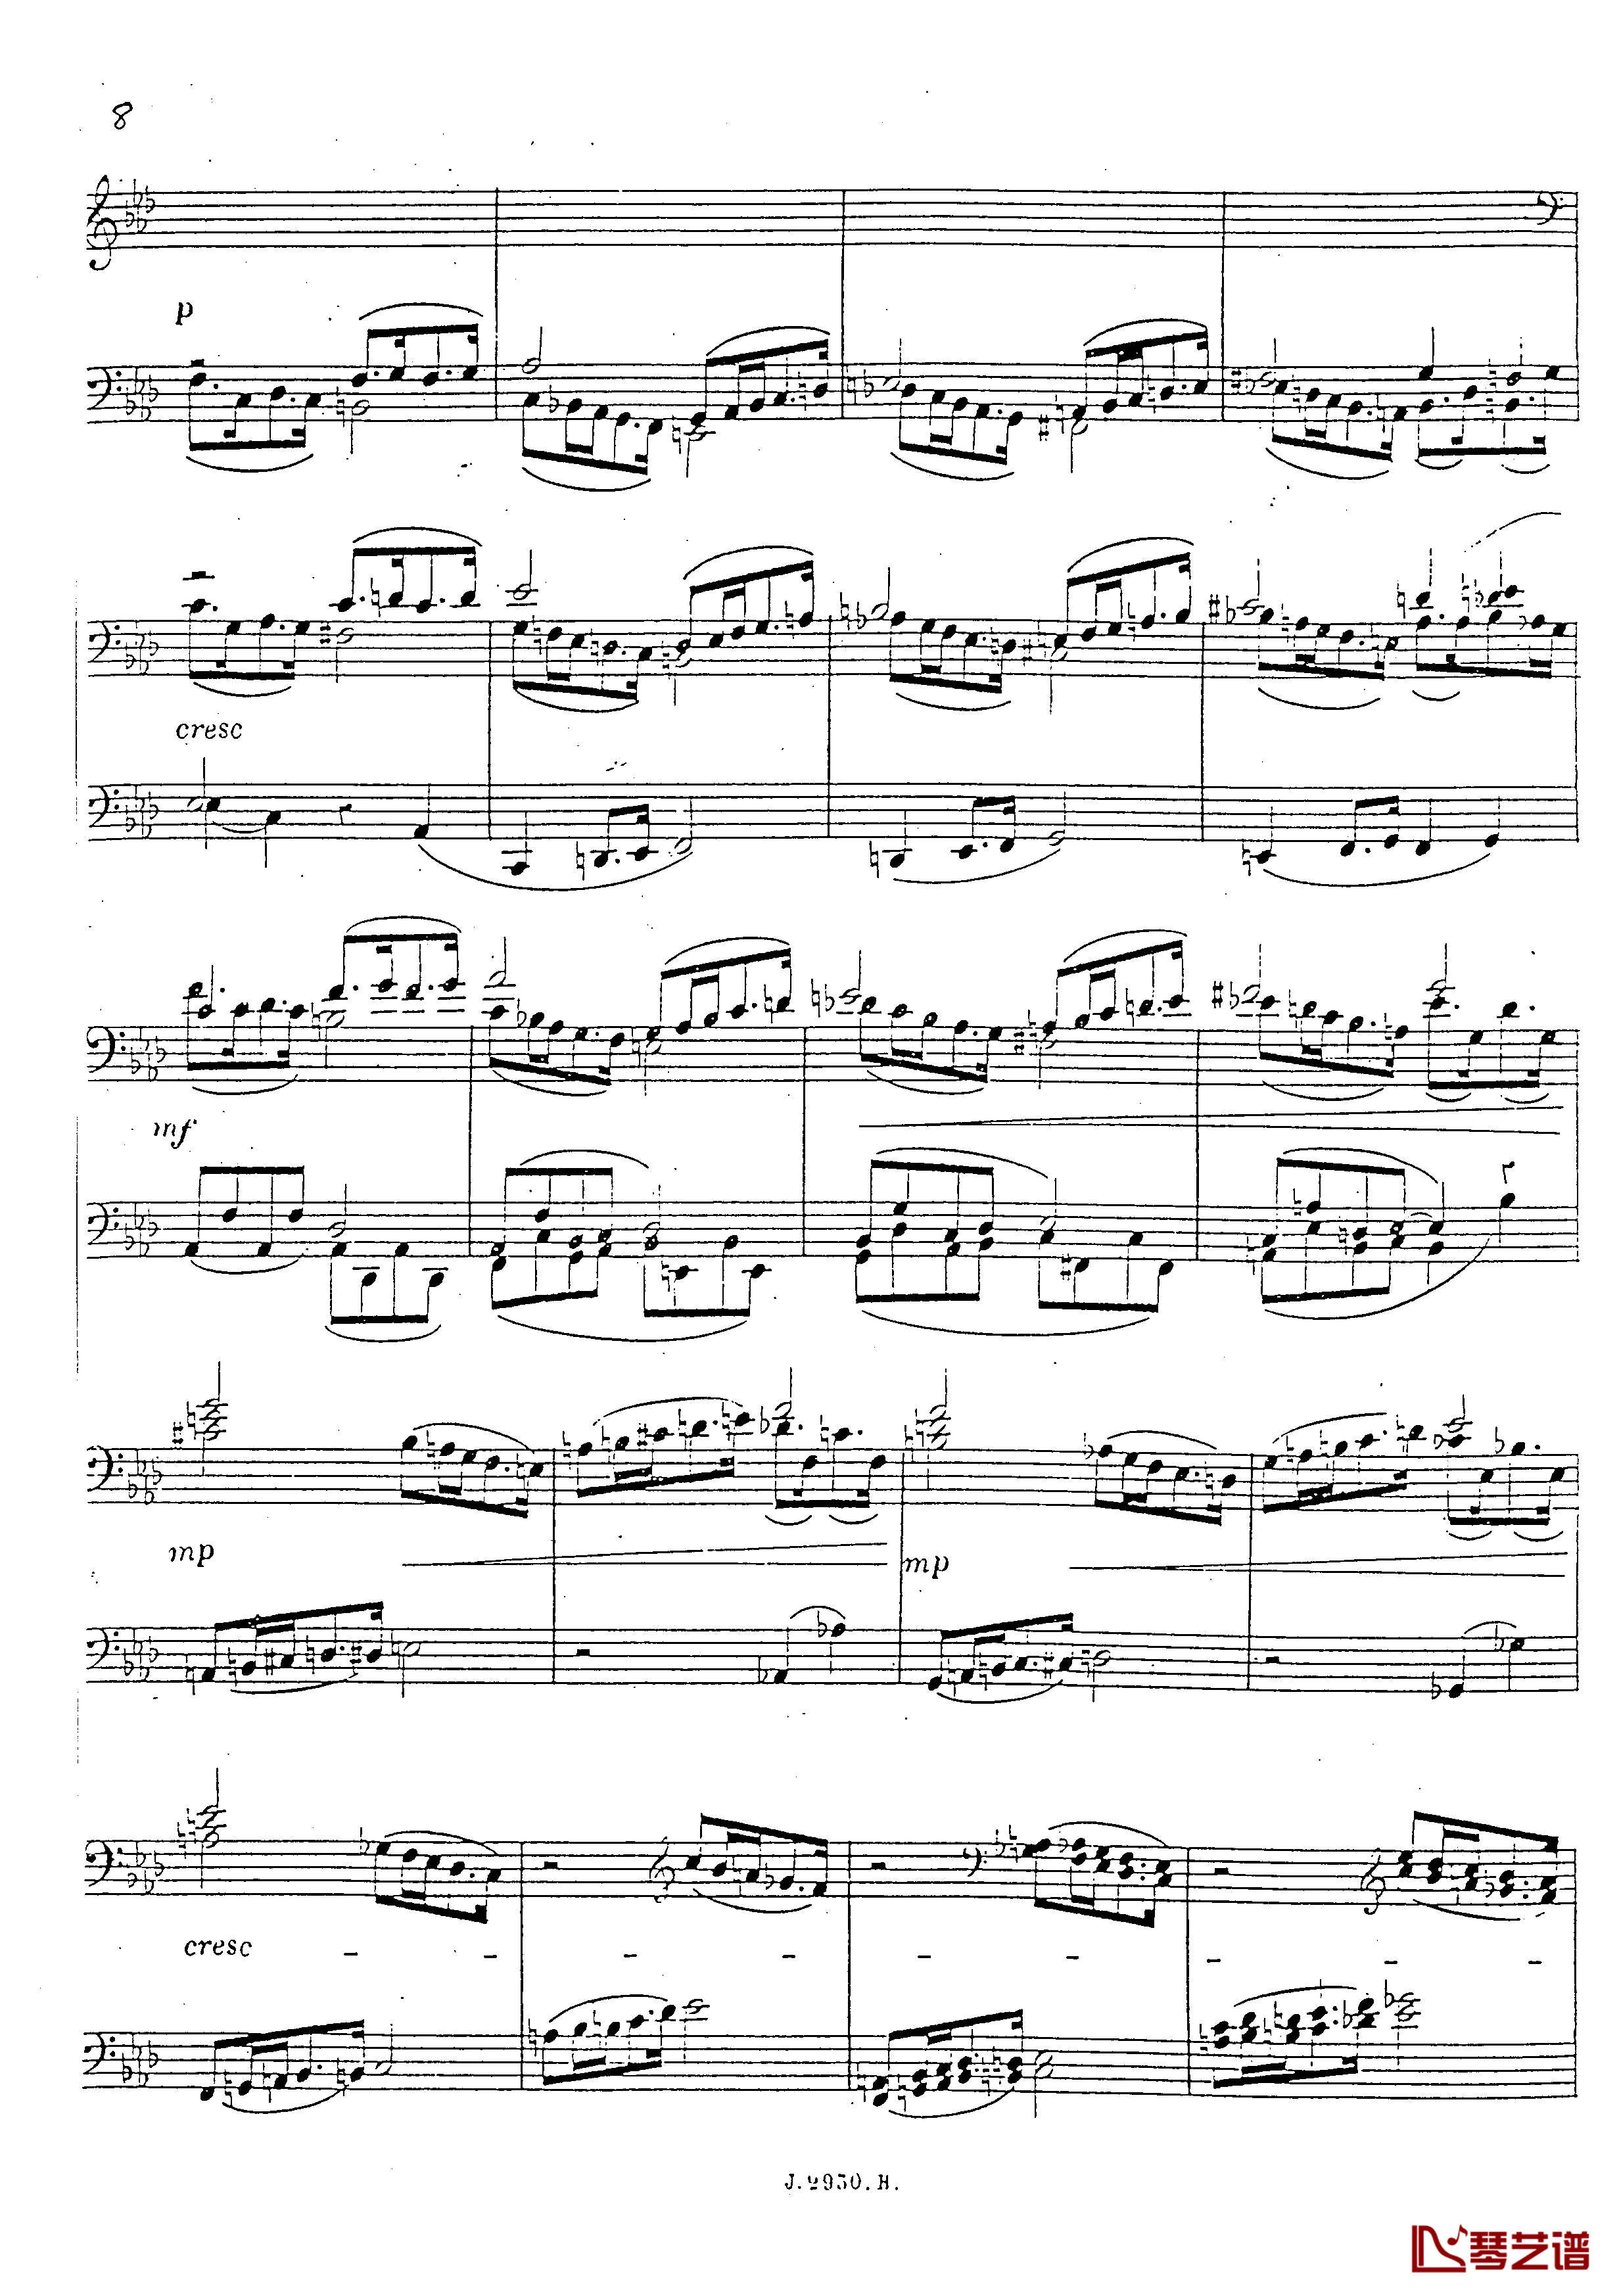 a小调第四钢琴奏鸣曲钢琴谱-安东 鲁宾斯坦- Op.1009